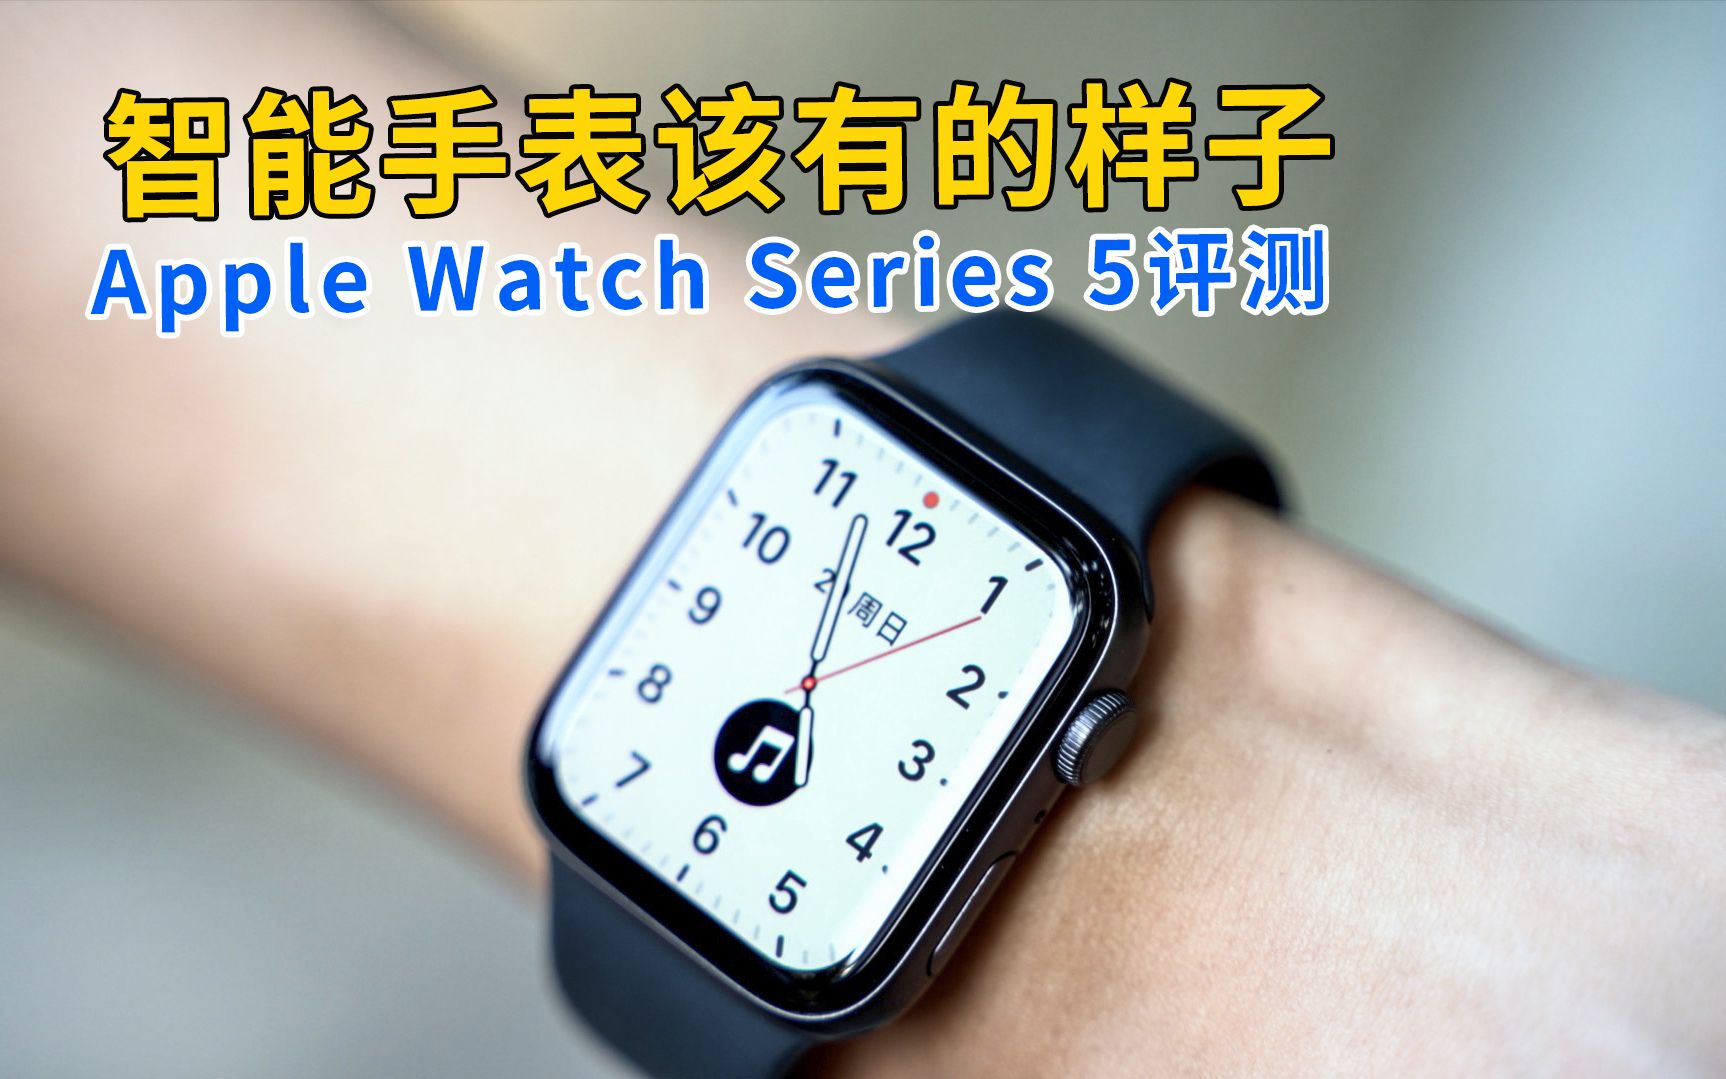 Apple Watch Series 5与fitbit Versa 2 哪款才是最好的智能手表 相关视频 苹果手表系列5评论 仍然是最好的智能手表 爱言情 爱生活爱言情